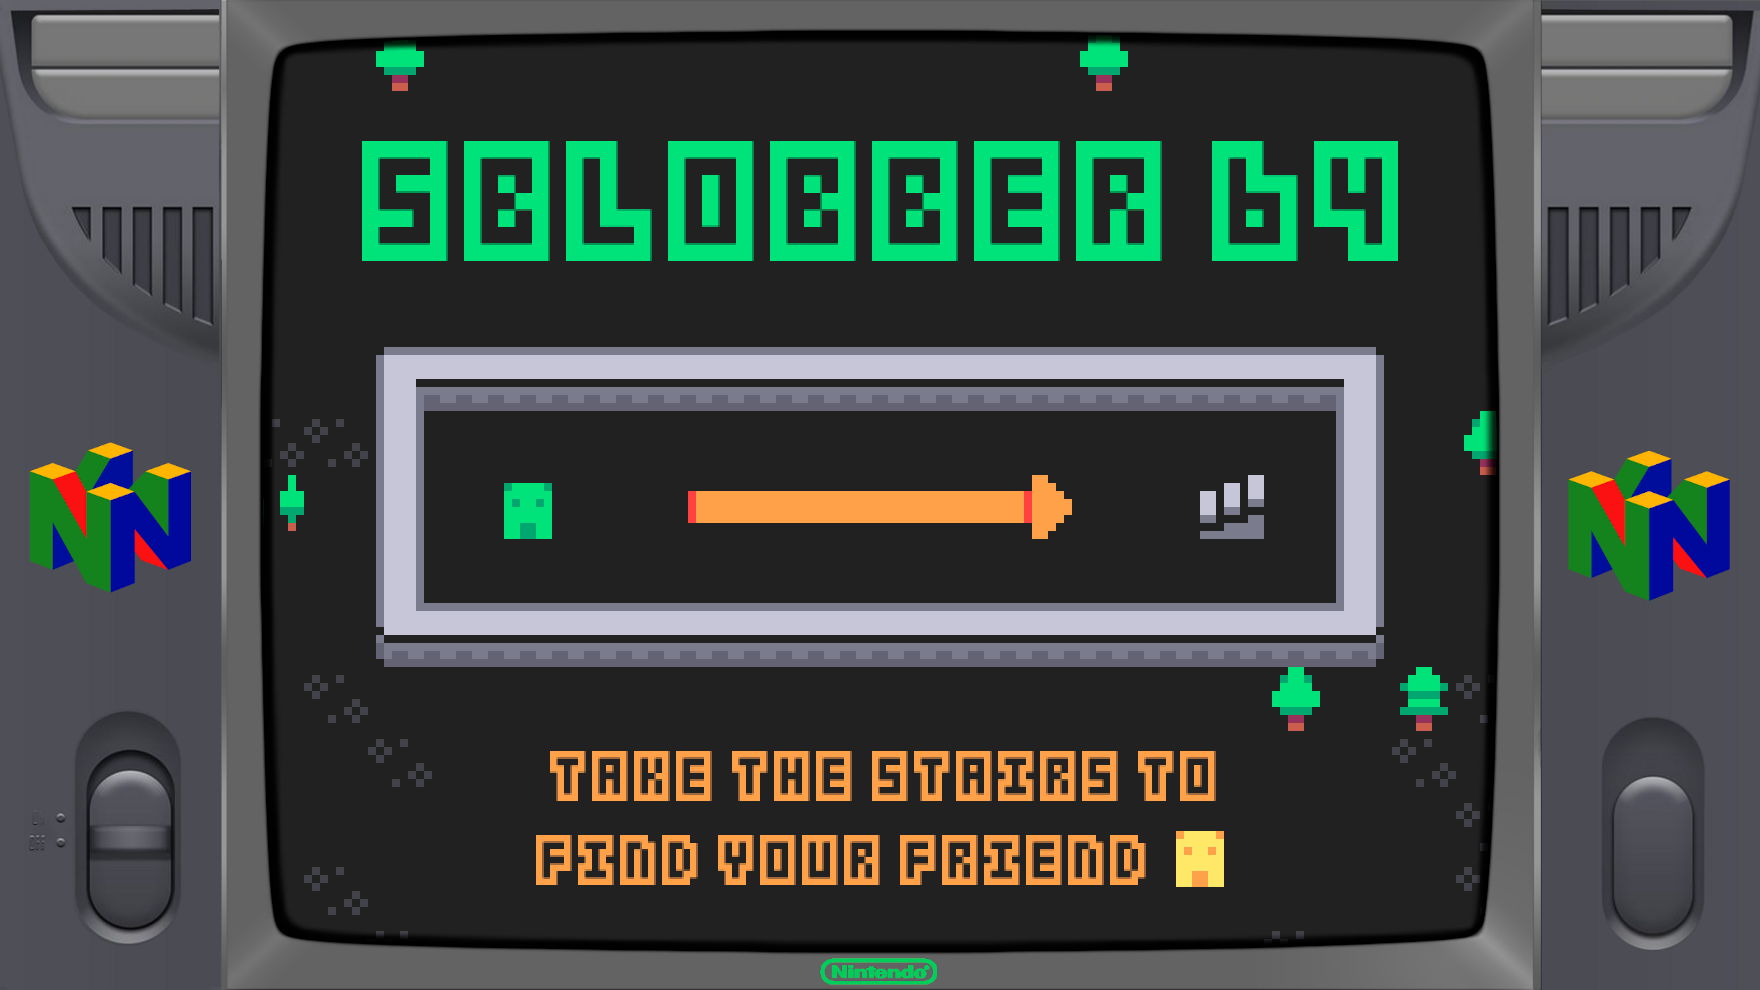 sblobber64 for Nintendo 64